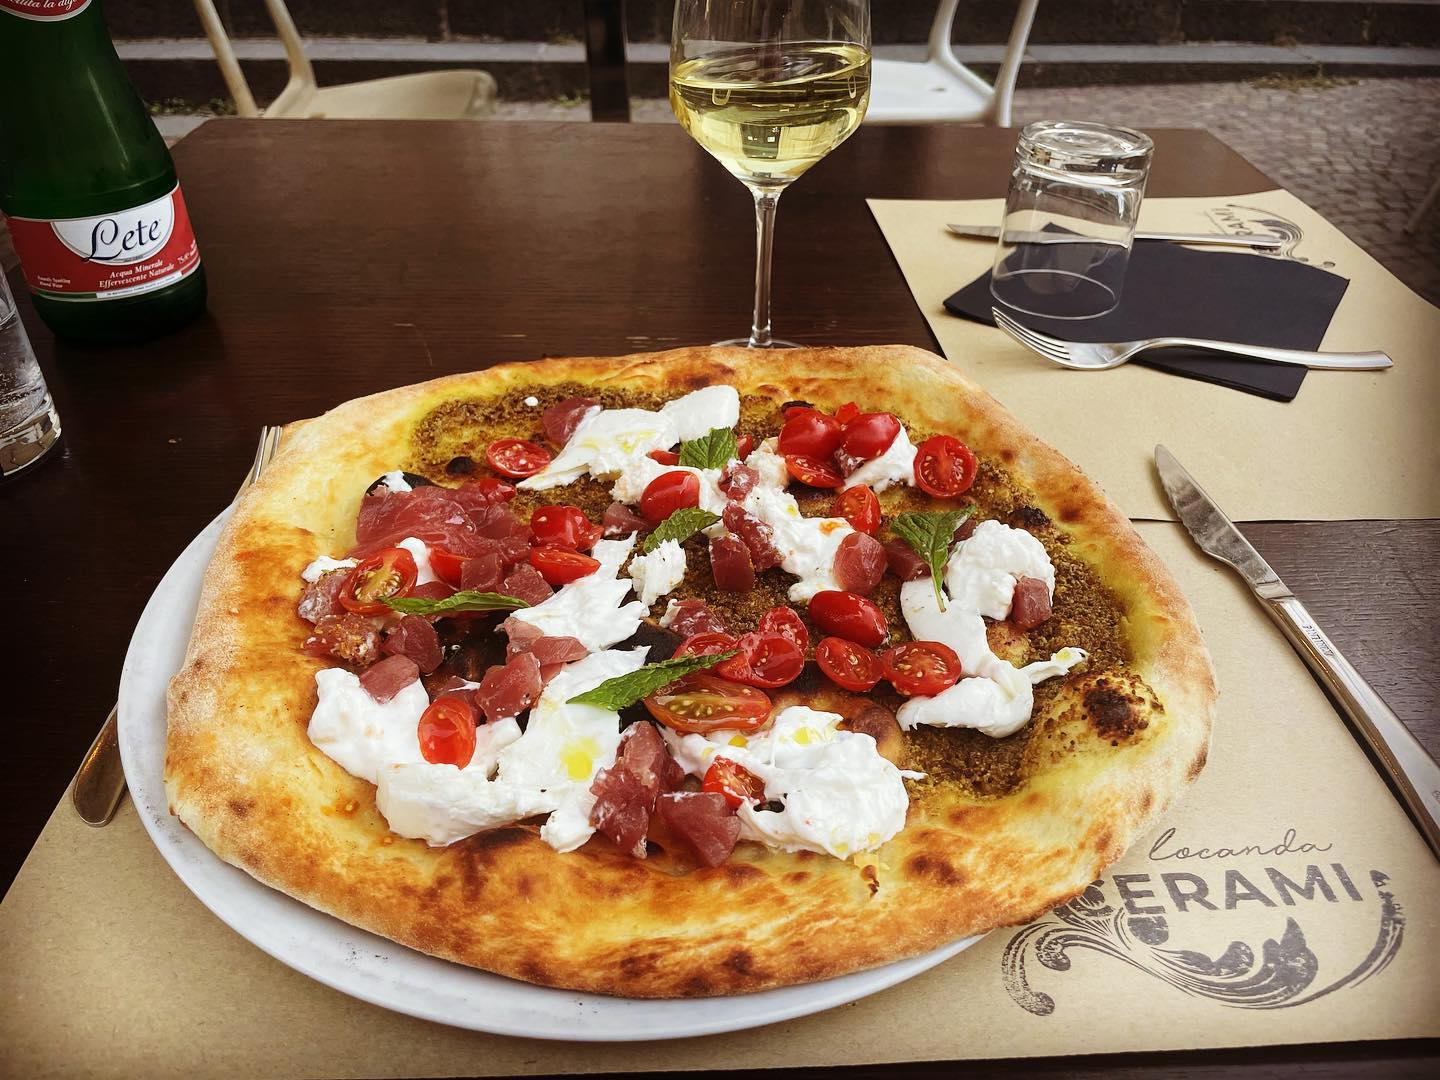 ove mangiare una fantastica pizza a Catania, Pizzerie, Catania, Locanda Cerami, Piatto, Pizza, Vino, Bottiglia